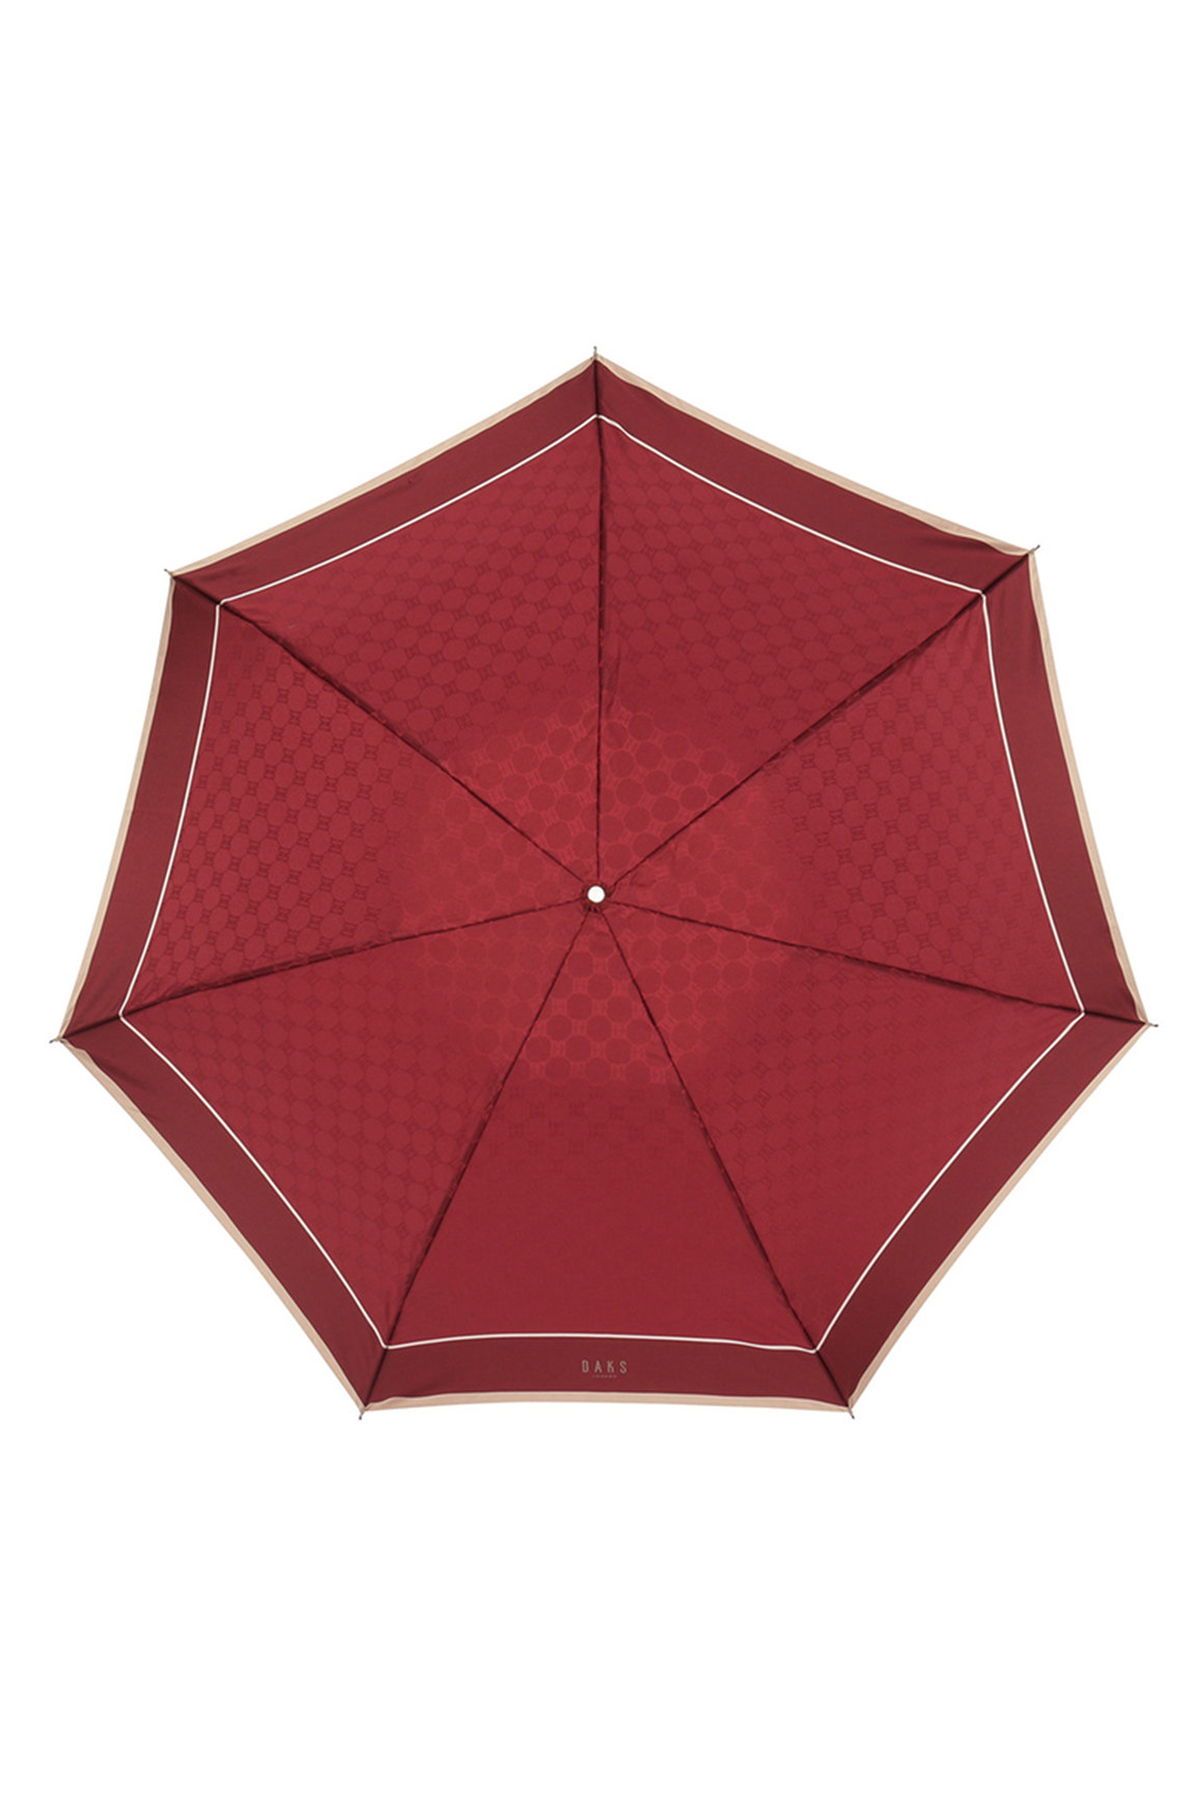 【雨傘】折りたたみ傘ジャカード 詳細画像 8